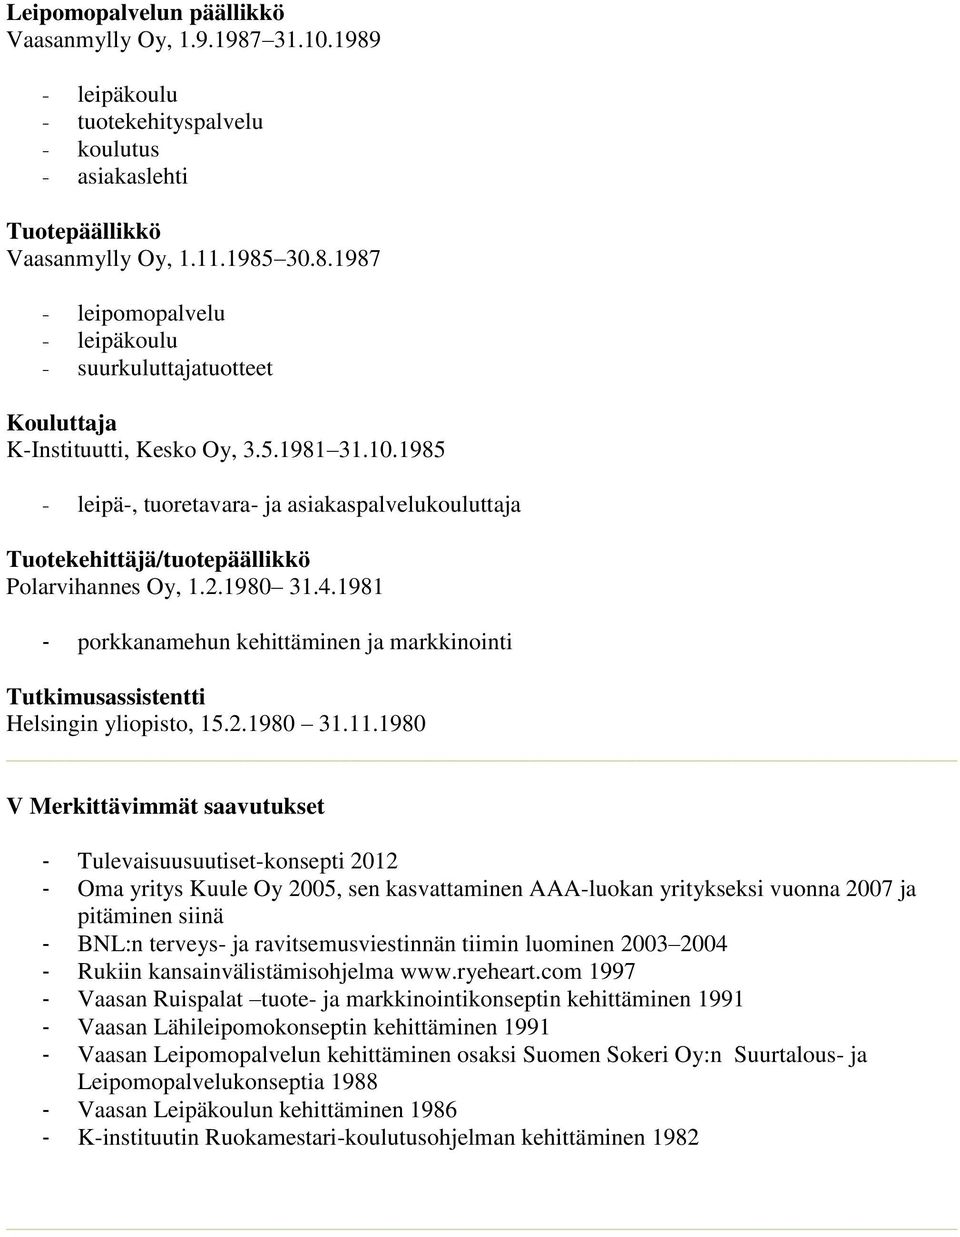 1981 - porkkanamehun kehittäminen ja markkinointi Tutkimusassistentti Helsingin yliopisto, 15.2.1980 31.11.